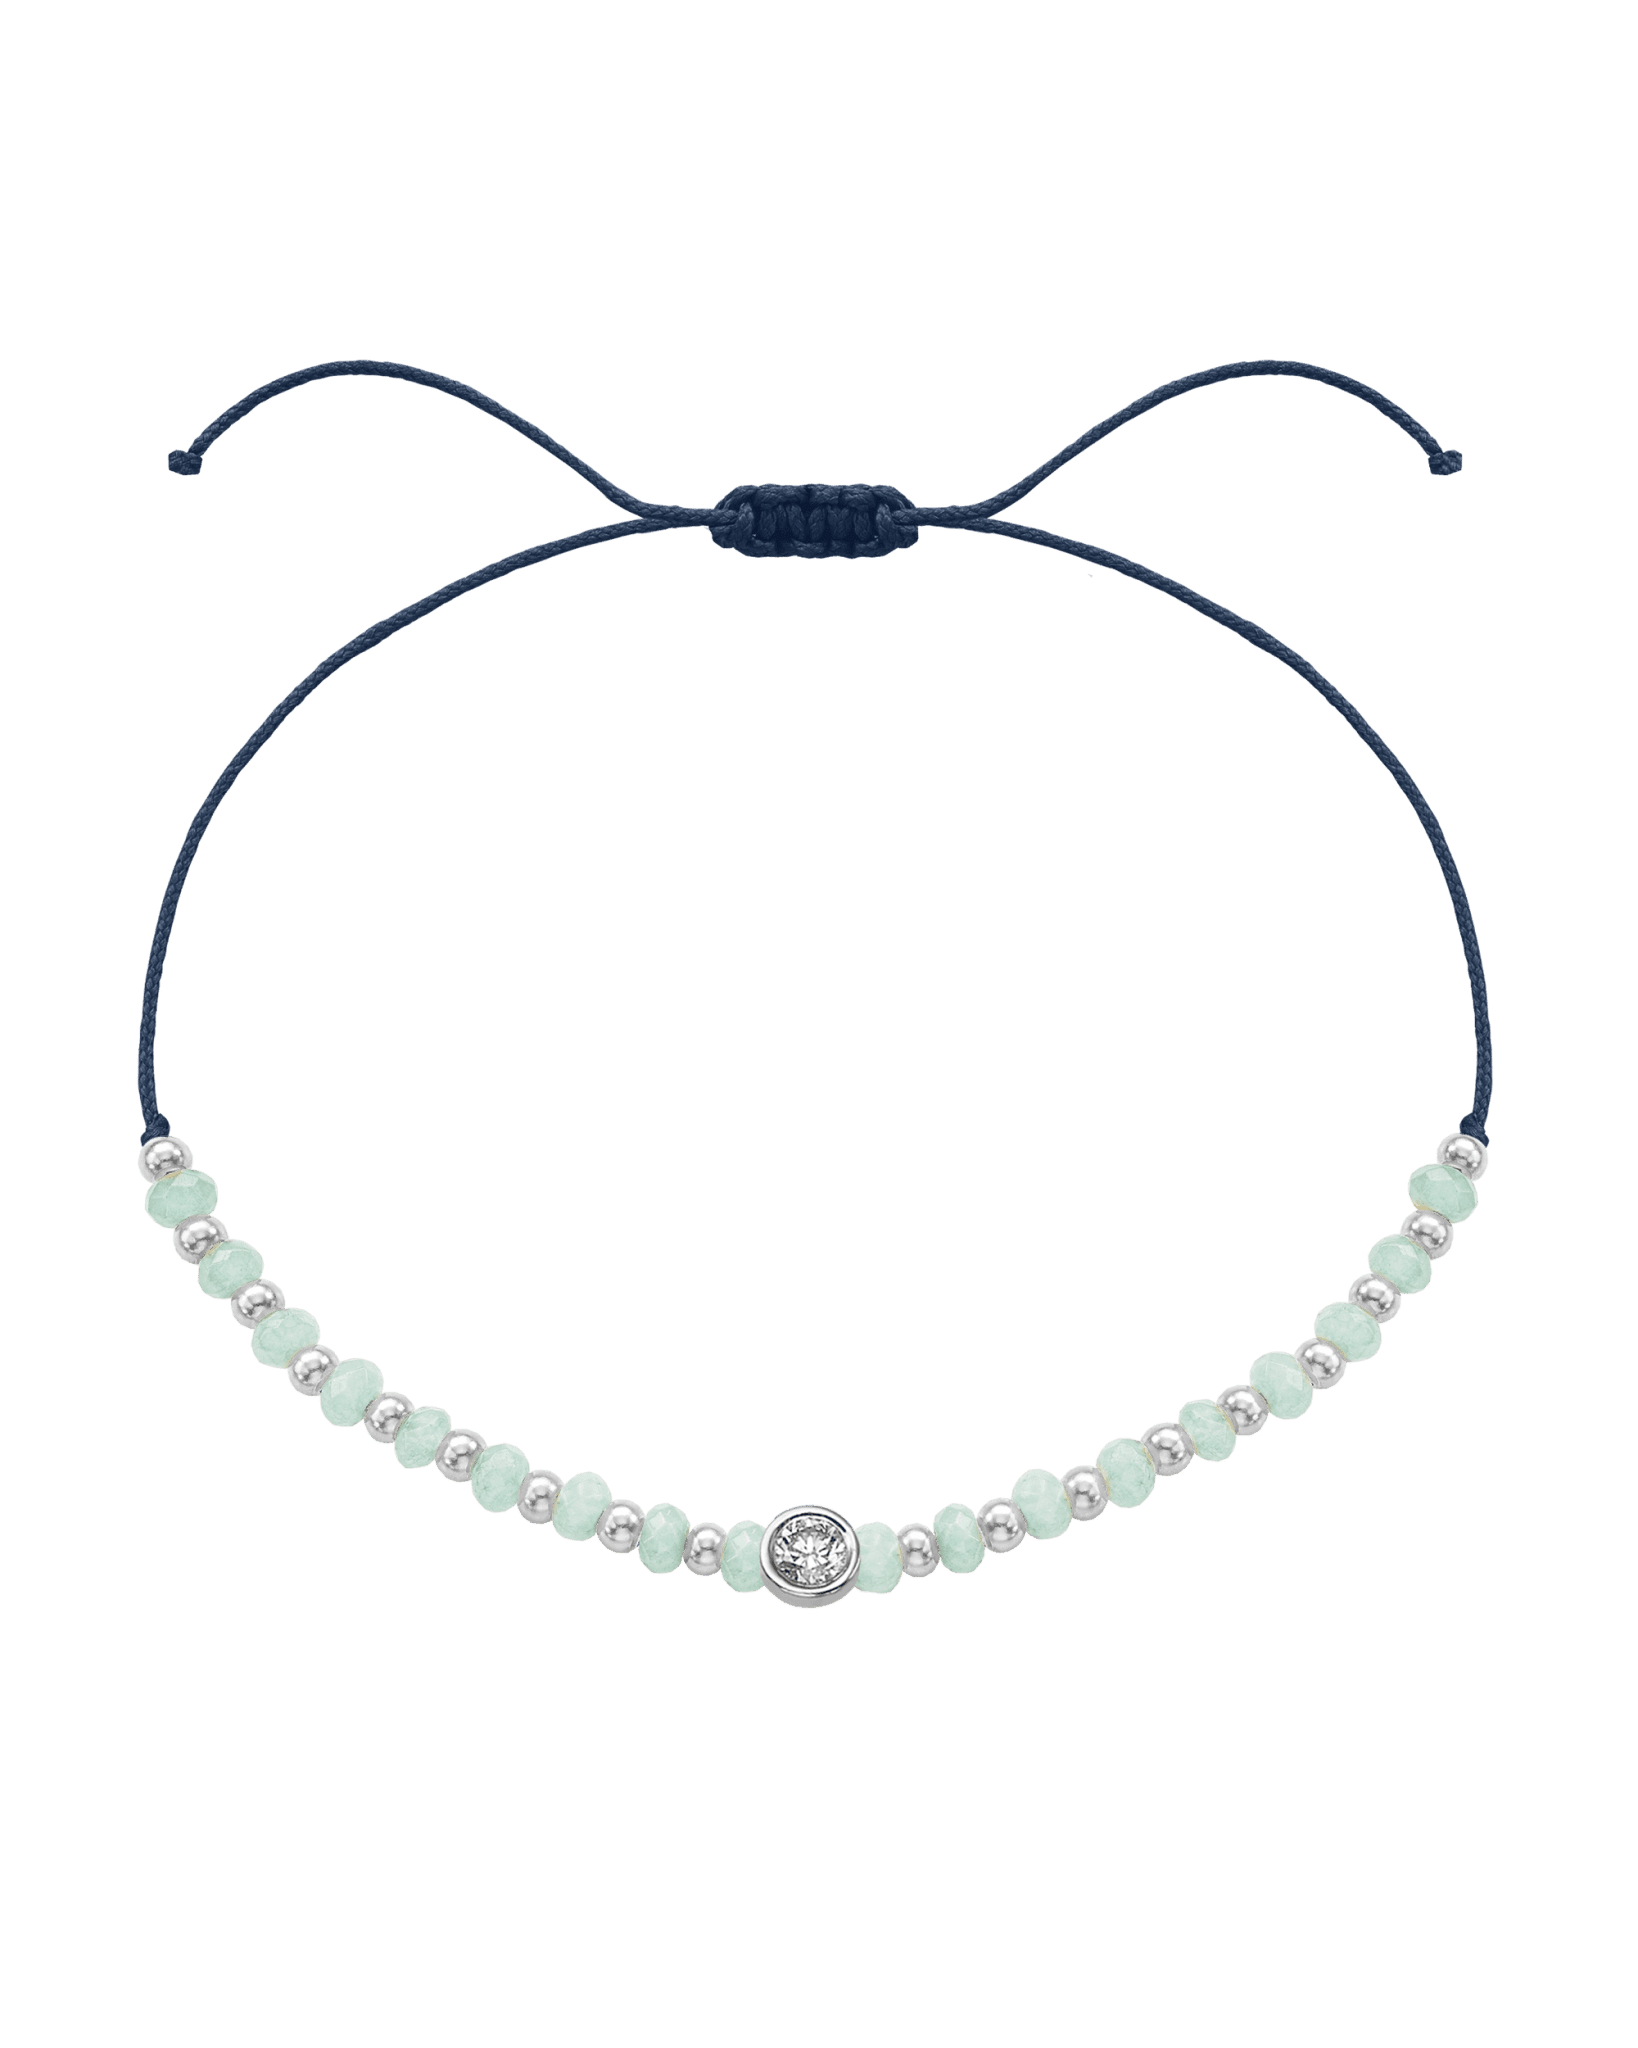 Apatite Gemstone String of Love Bracelet for Inspiration - 14K White Gold Bracelets 14K Solid Gold Navy Blue Large: 0.1ct 